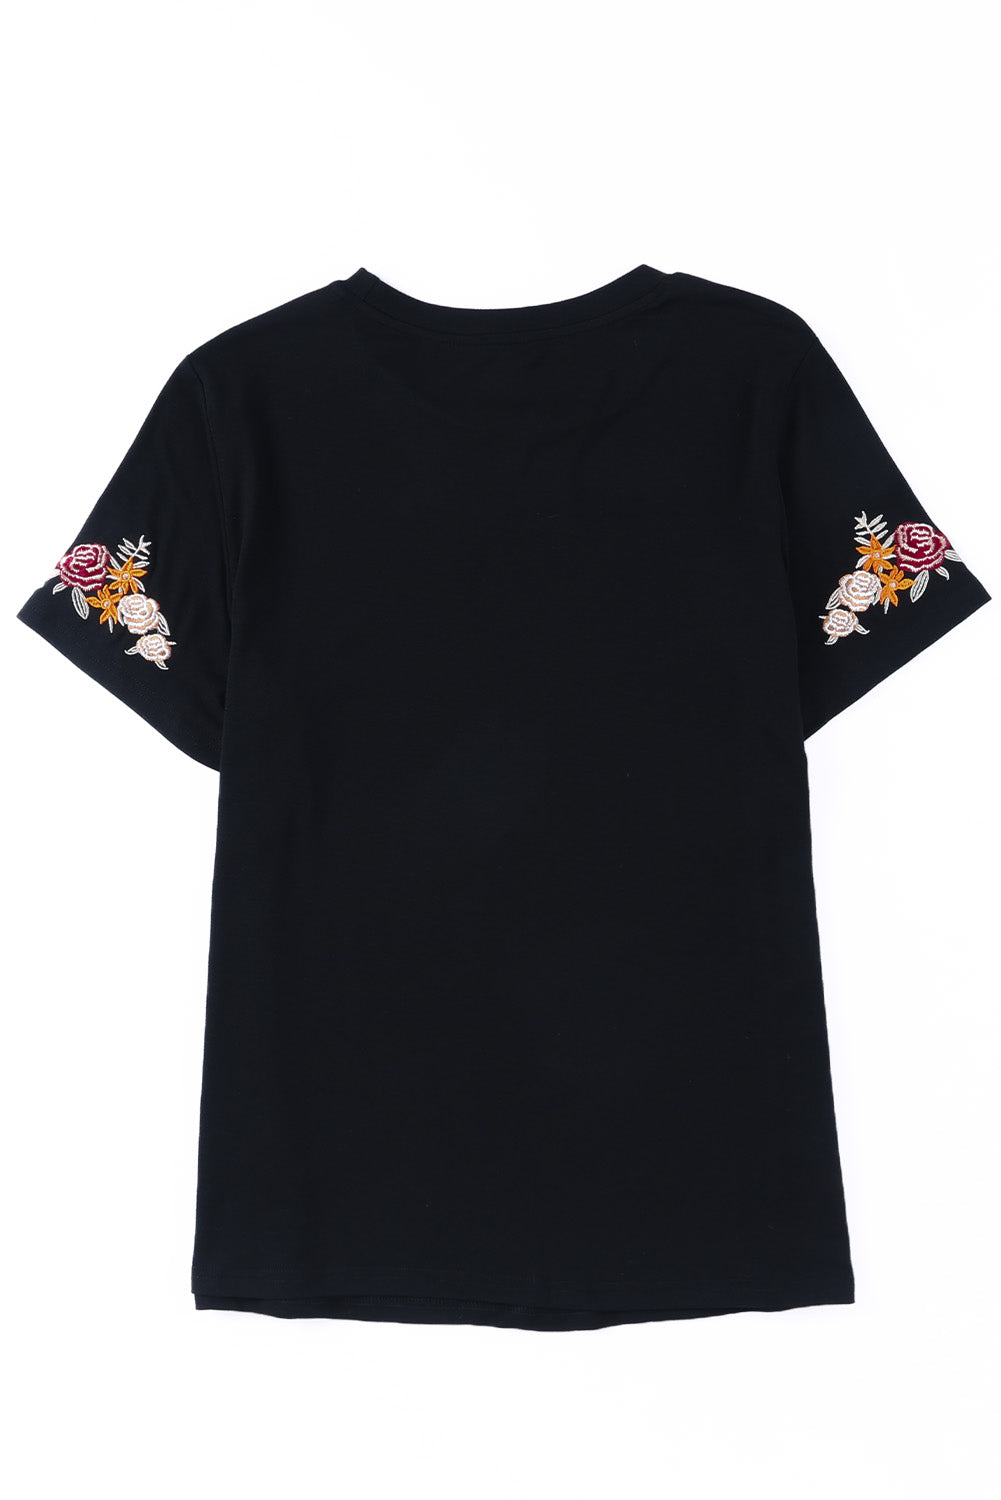 Schwarzes, kurzärmliges T-Shirt mit Rundhalsausschnitt und Blumenstickerei